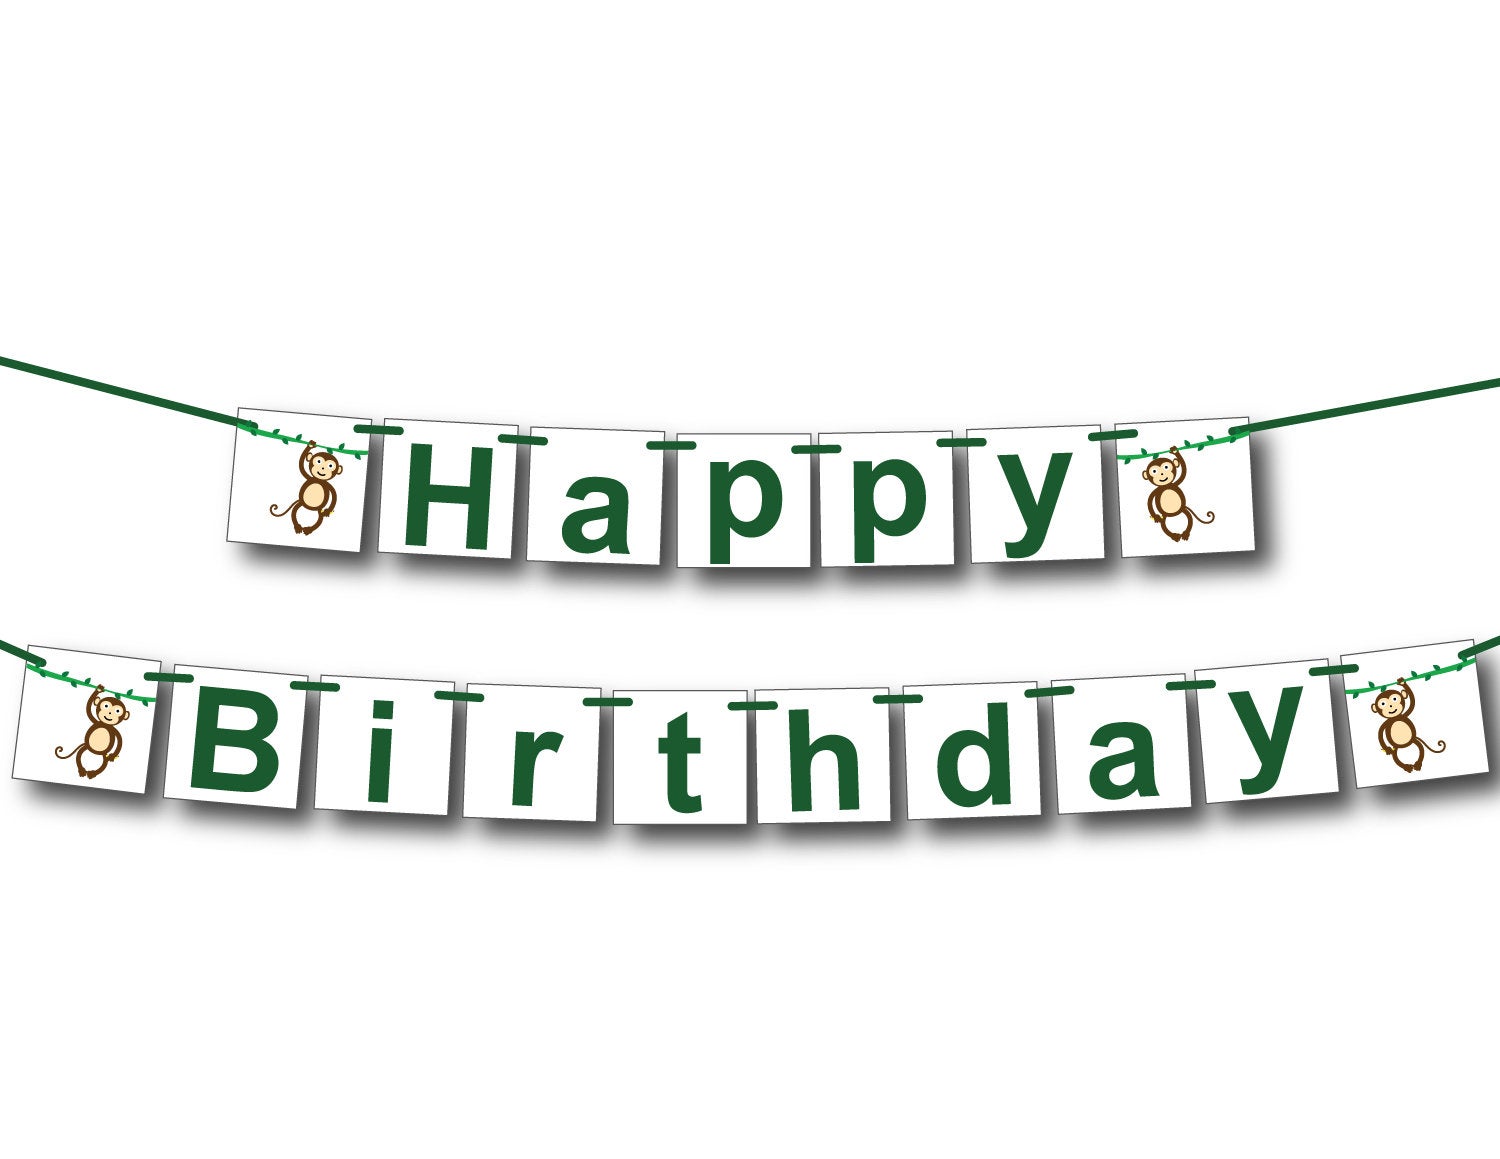 DIY happy birthday banner monkey themed - Celebrating Together